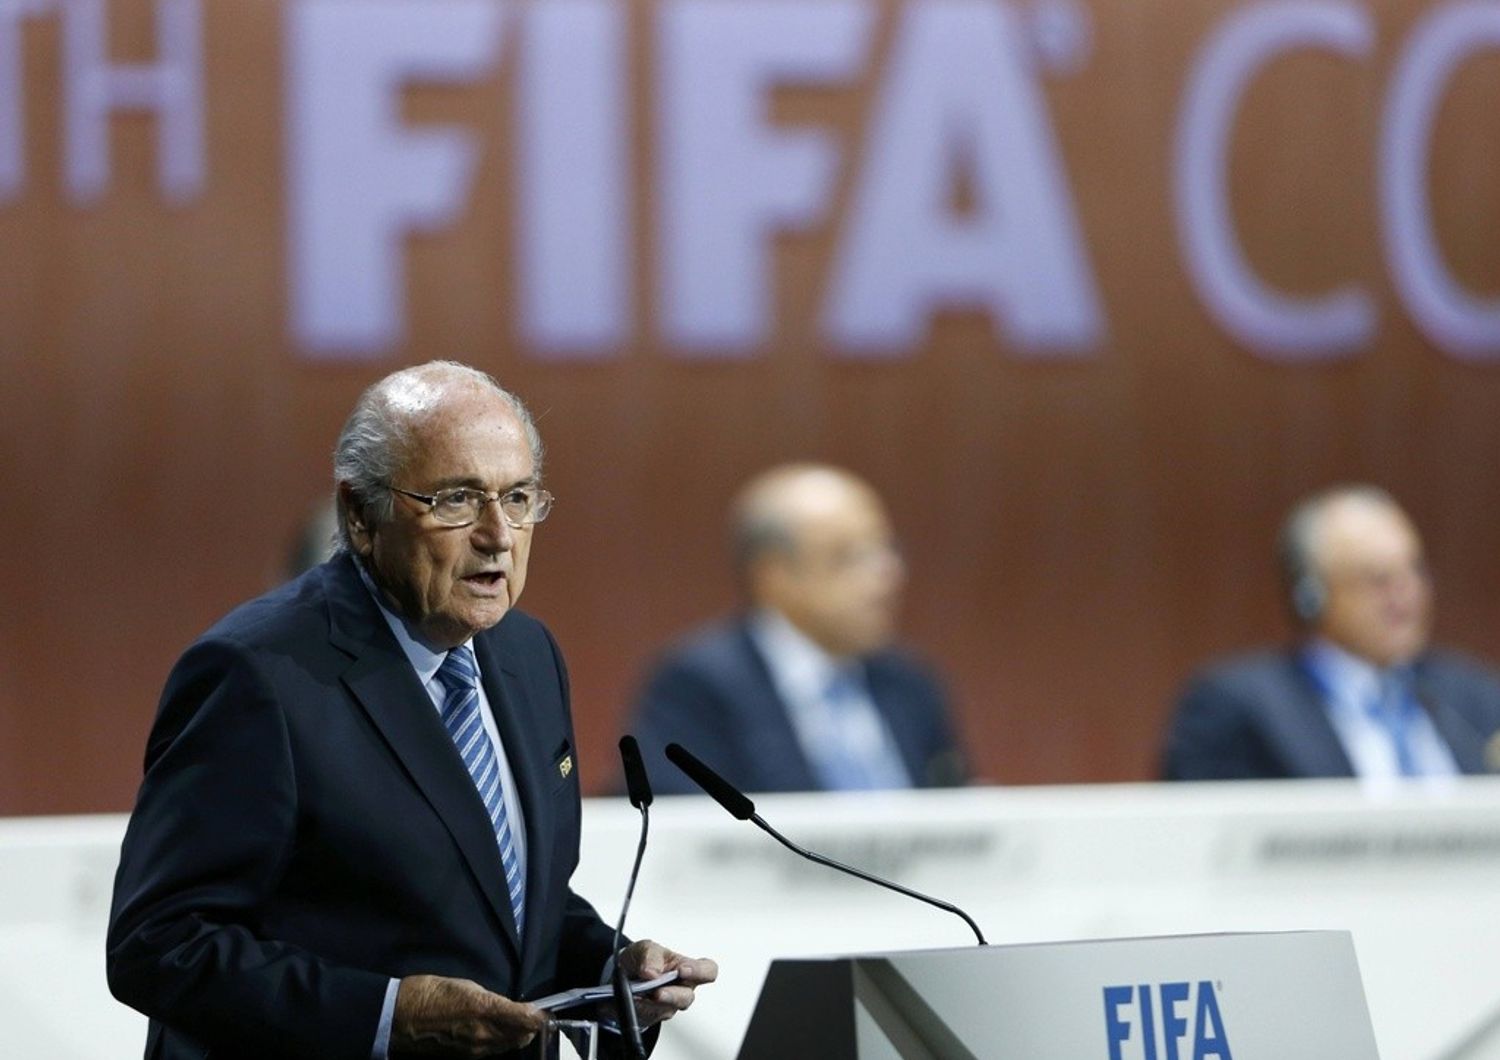 Tangenti: Blatter assolve la Fifa, "Colpevoli sono gli individui"